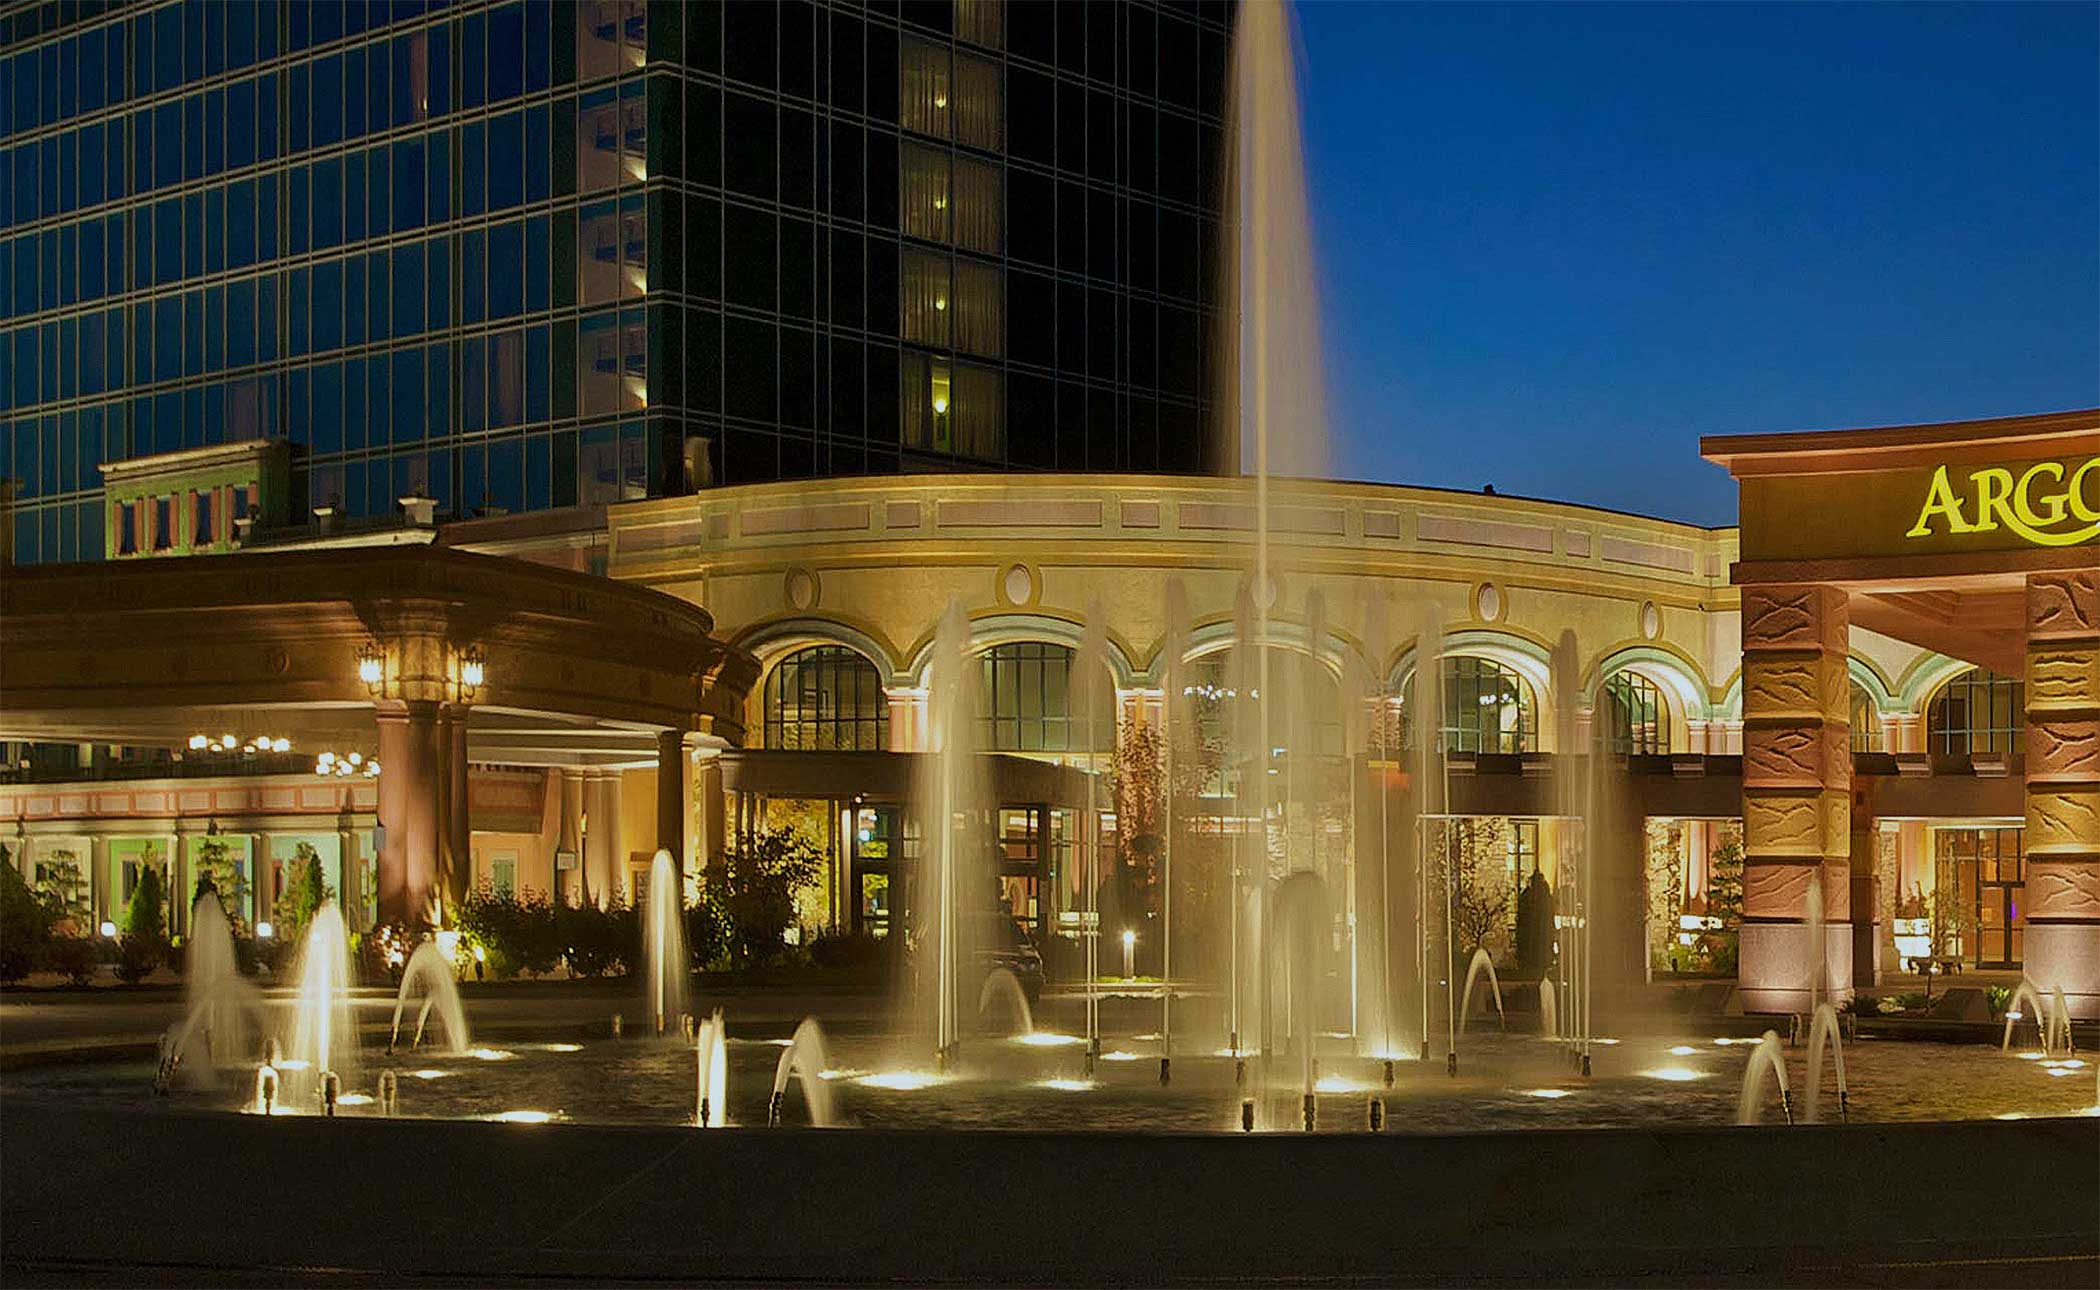 Argosy Casino Hotel & Spa located in Riverside, MO